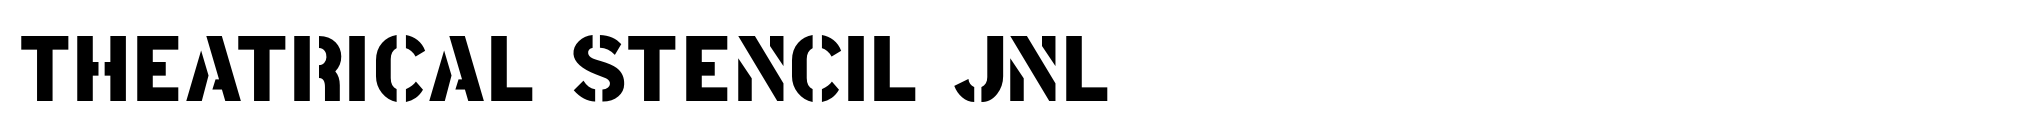 Theatrical Stencil JNL image